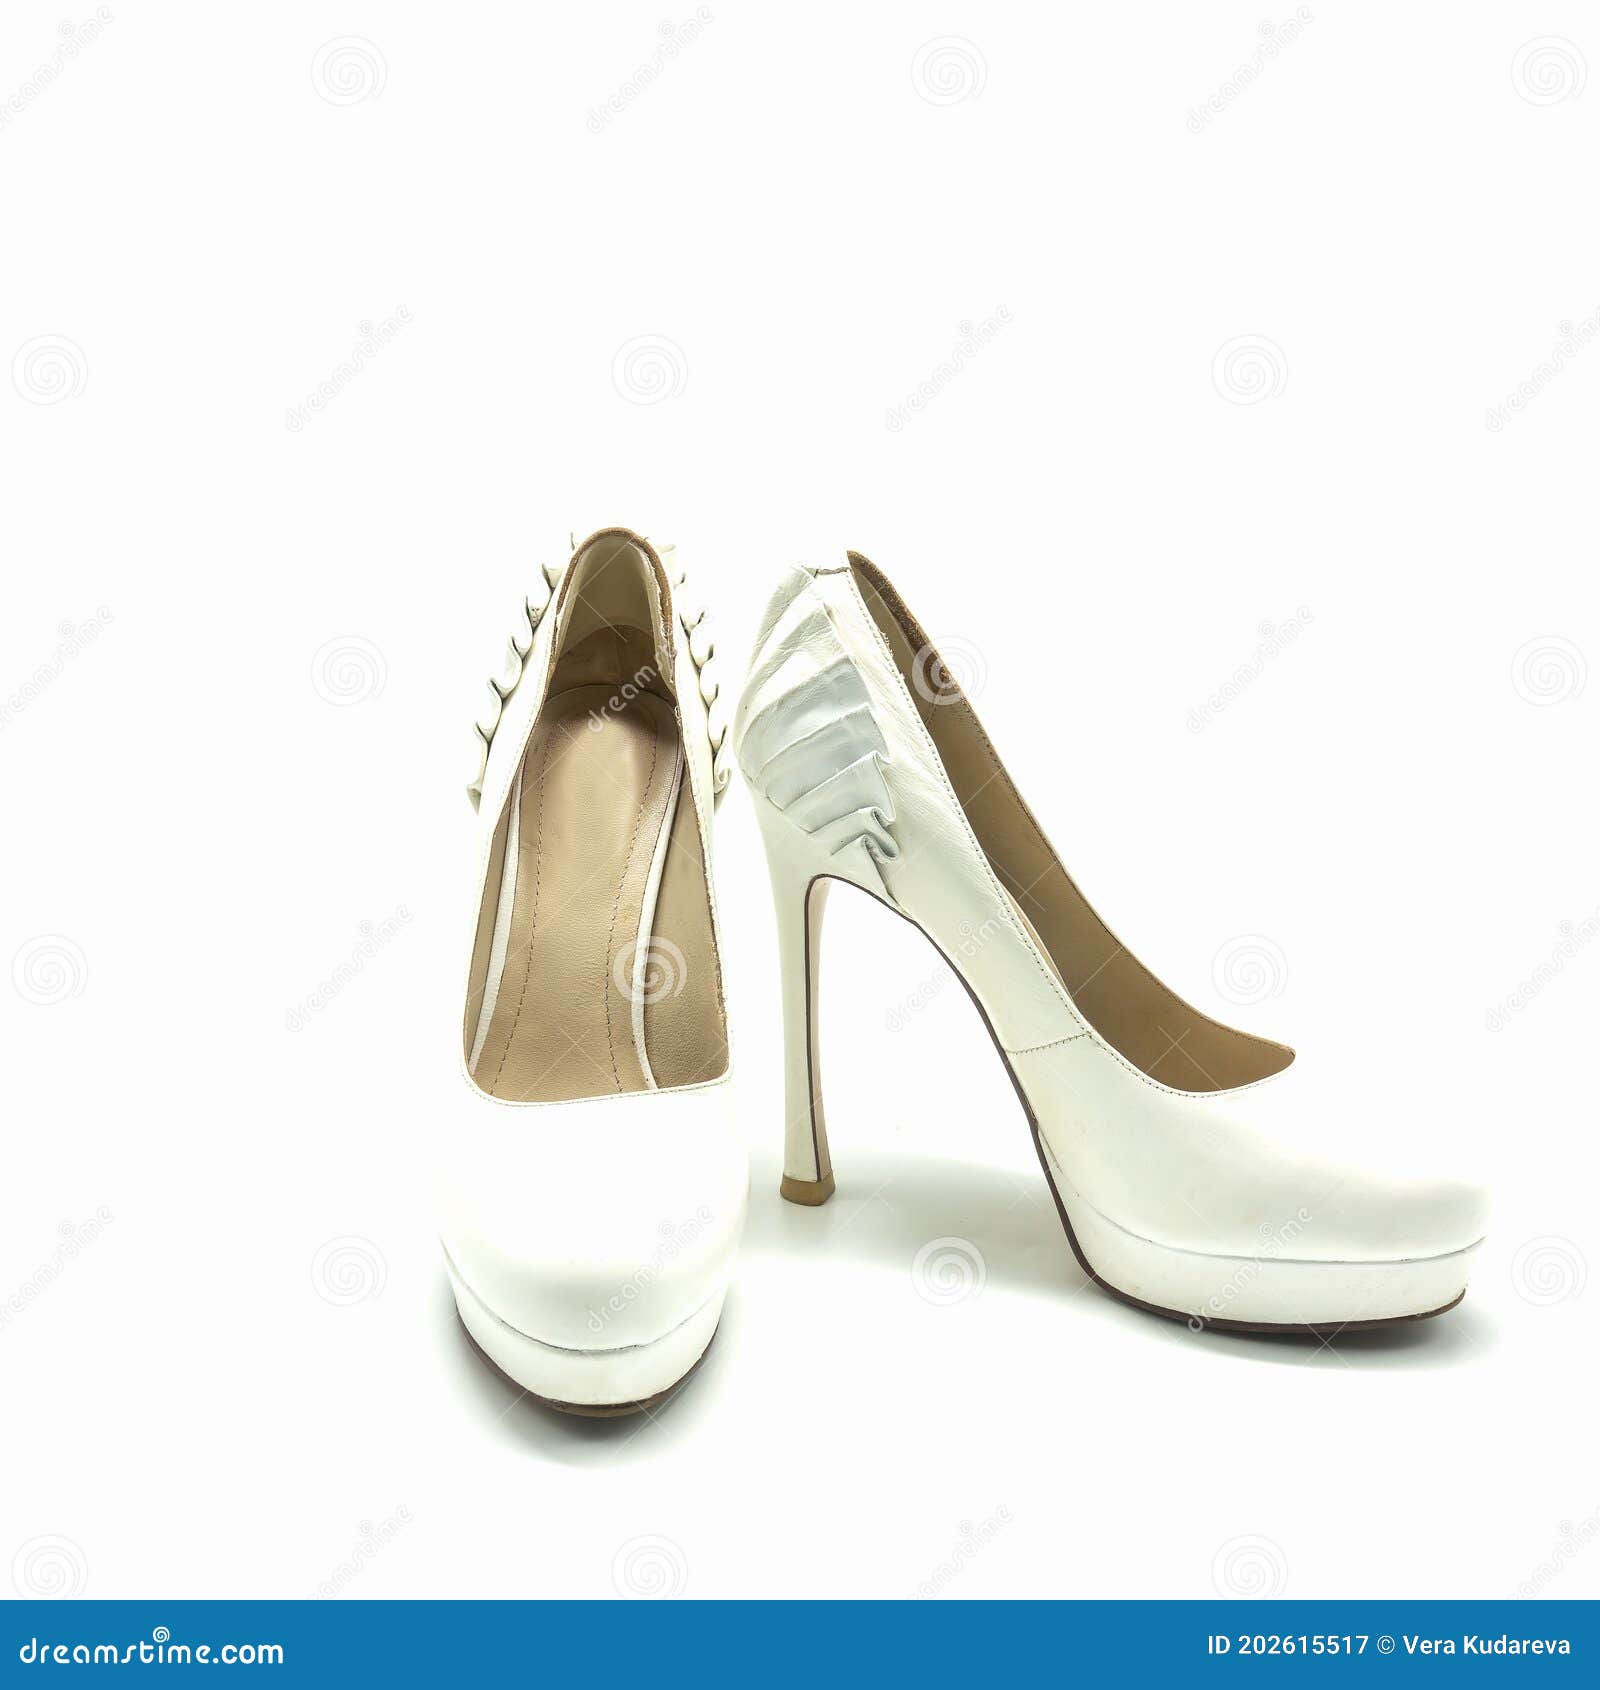 Zapatos Blancos Para Mujeres Con Tacones Altos Y Plataforma de archivo - Imagen cuero, alto: 202615517